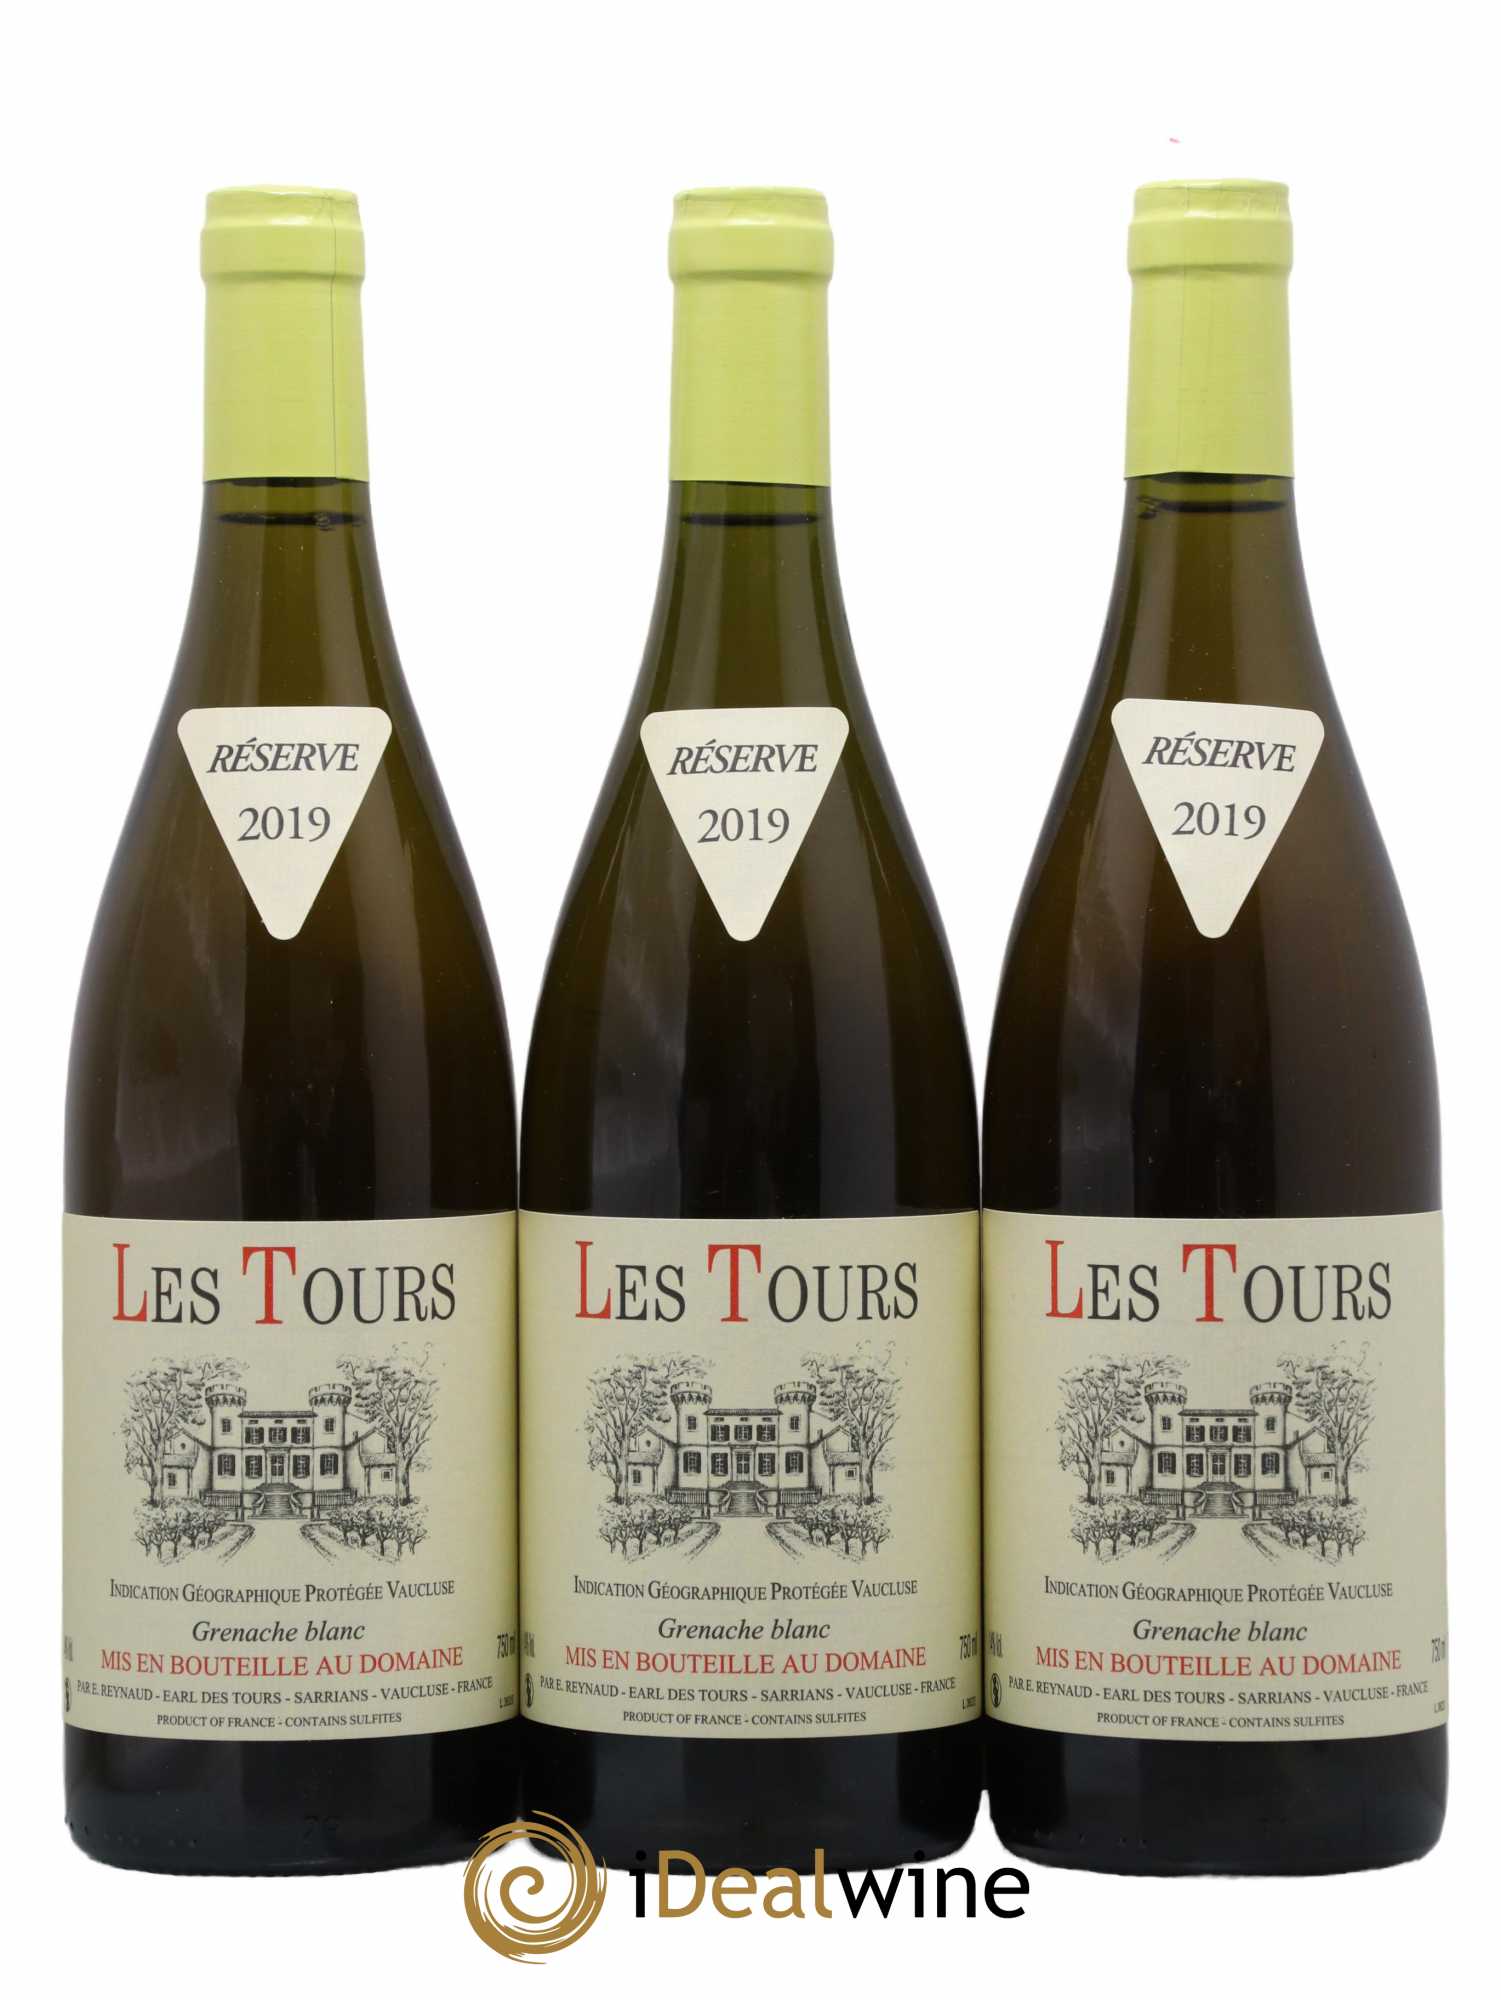 IGP Vaucluse (Vin de Pays de Vaucluse) Grenache Blanc - Les Tours Emmanuel Reynaud